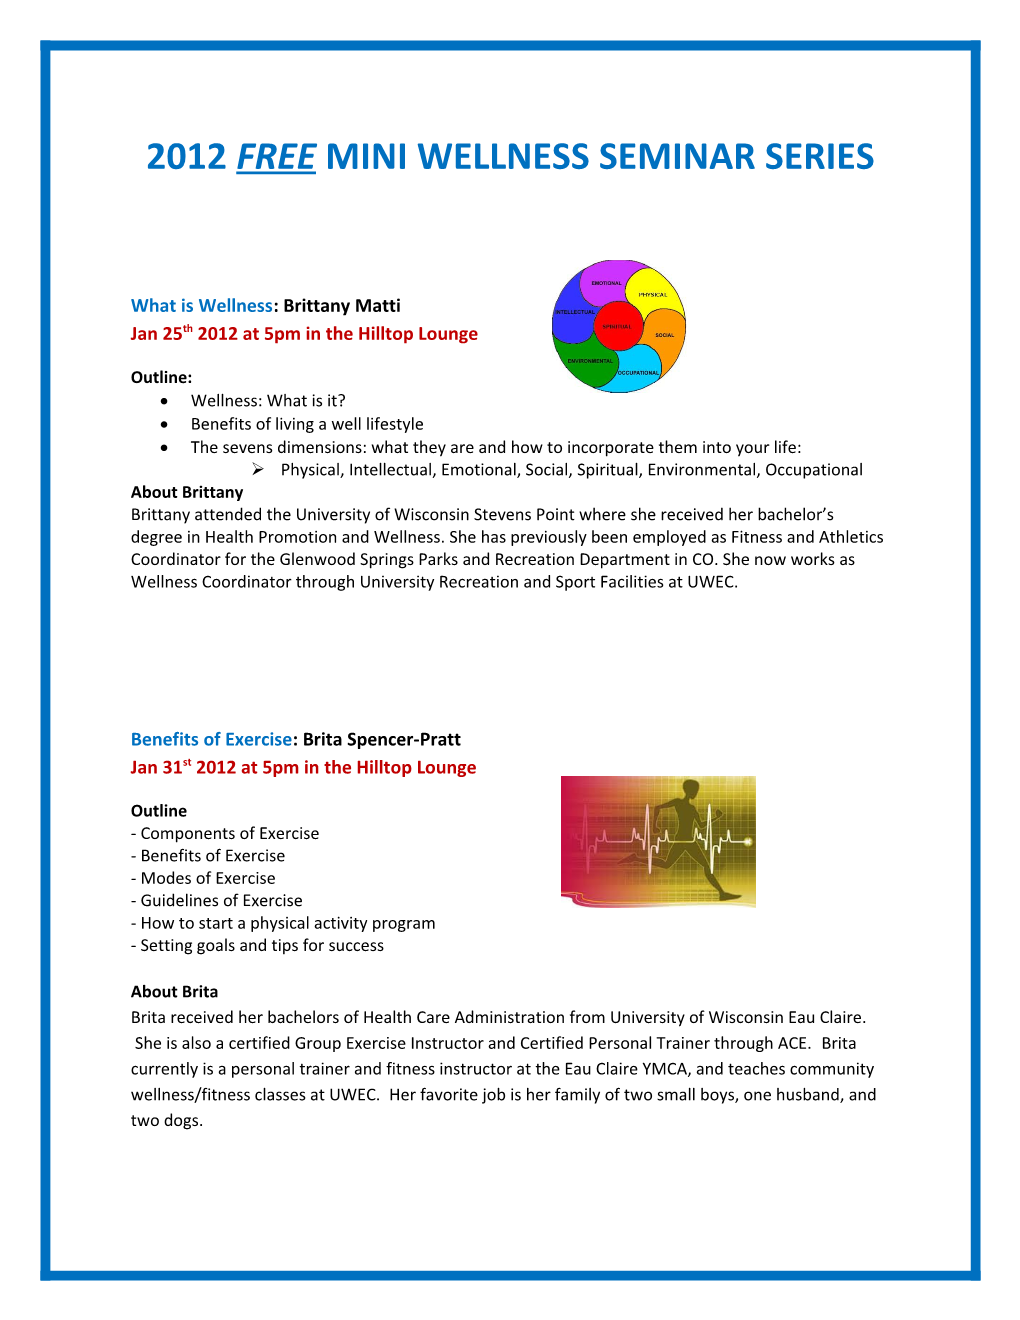 2012 Free Mini Wellness Seminar Series